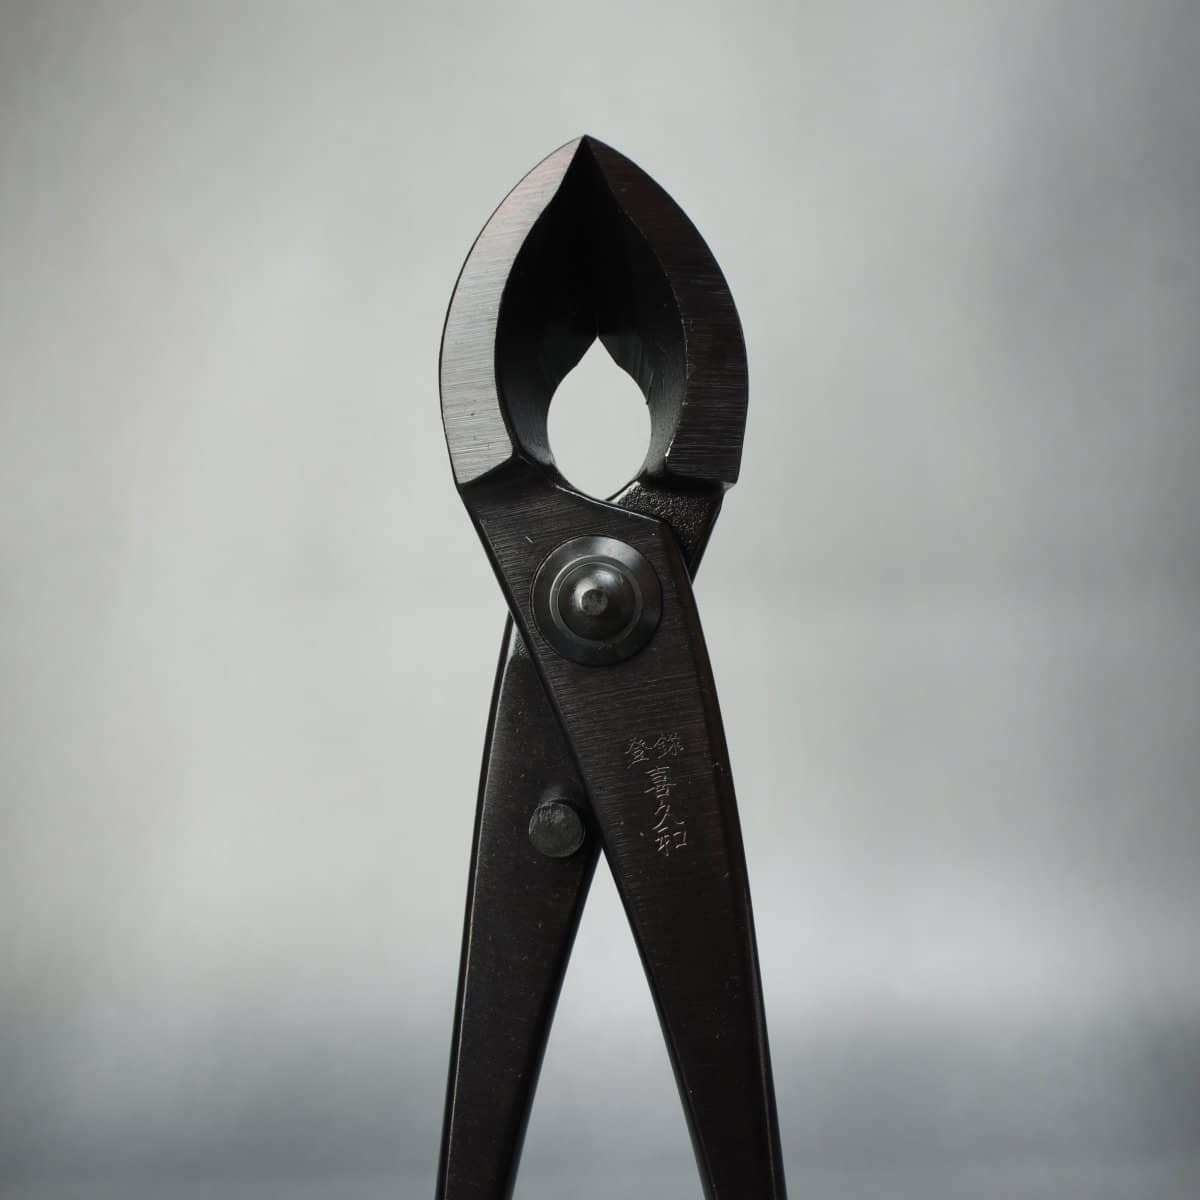 Kikuwa Bonsai Tool Kit 5 Piece Carbon Steel